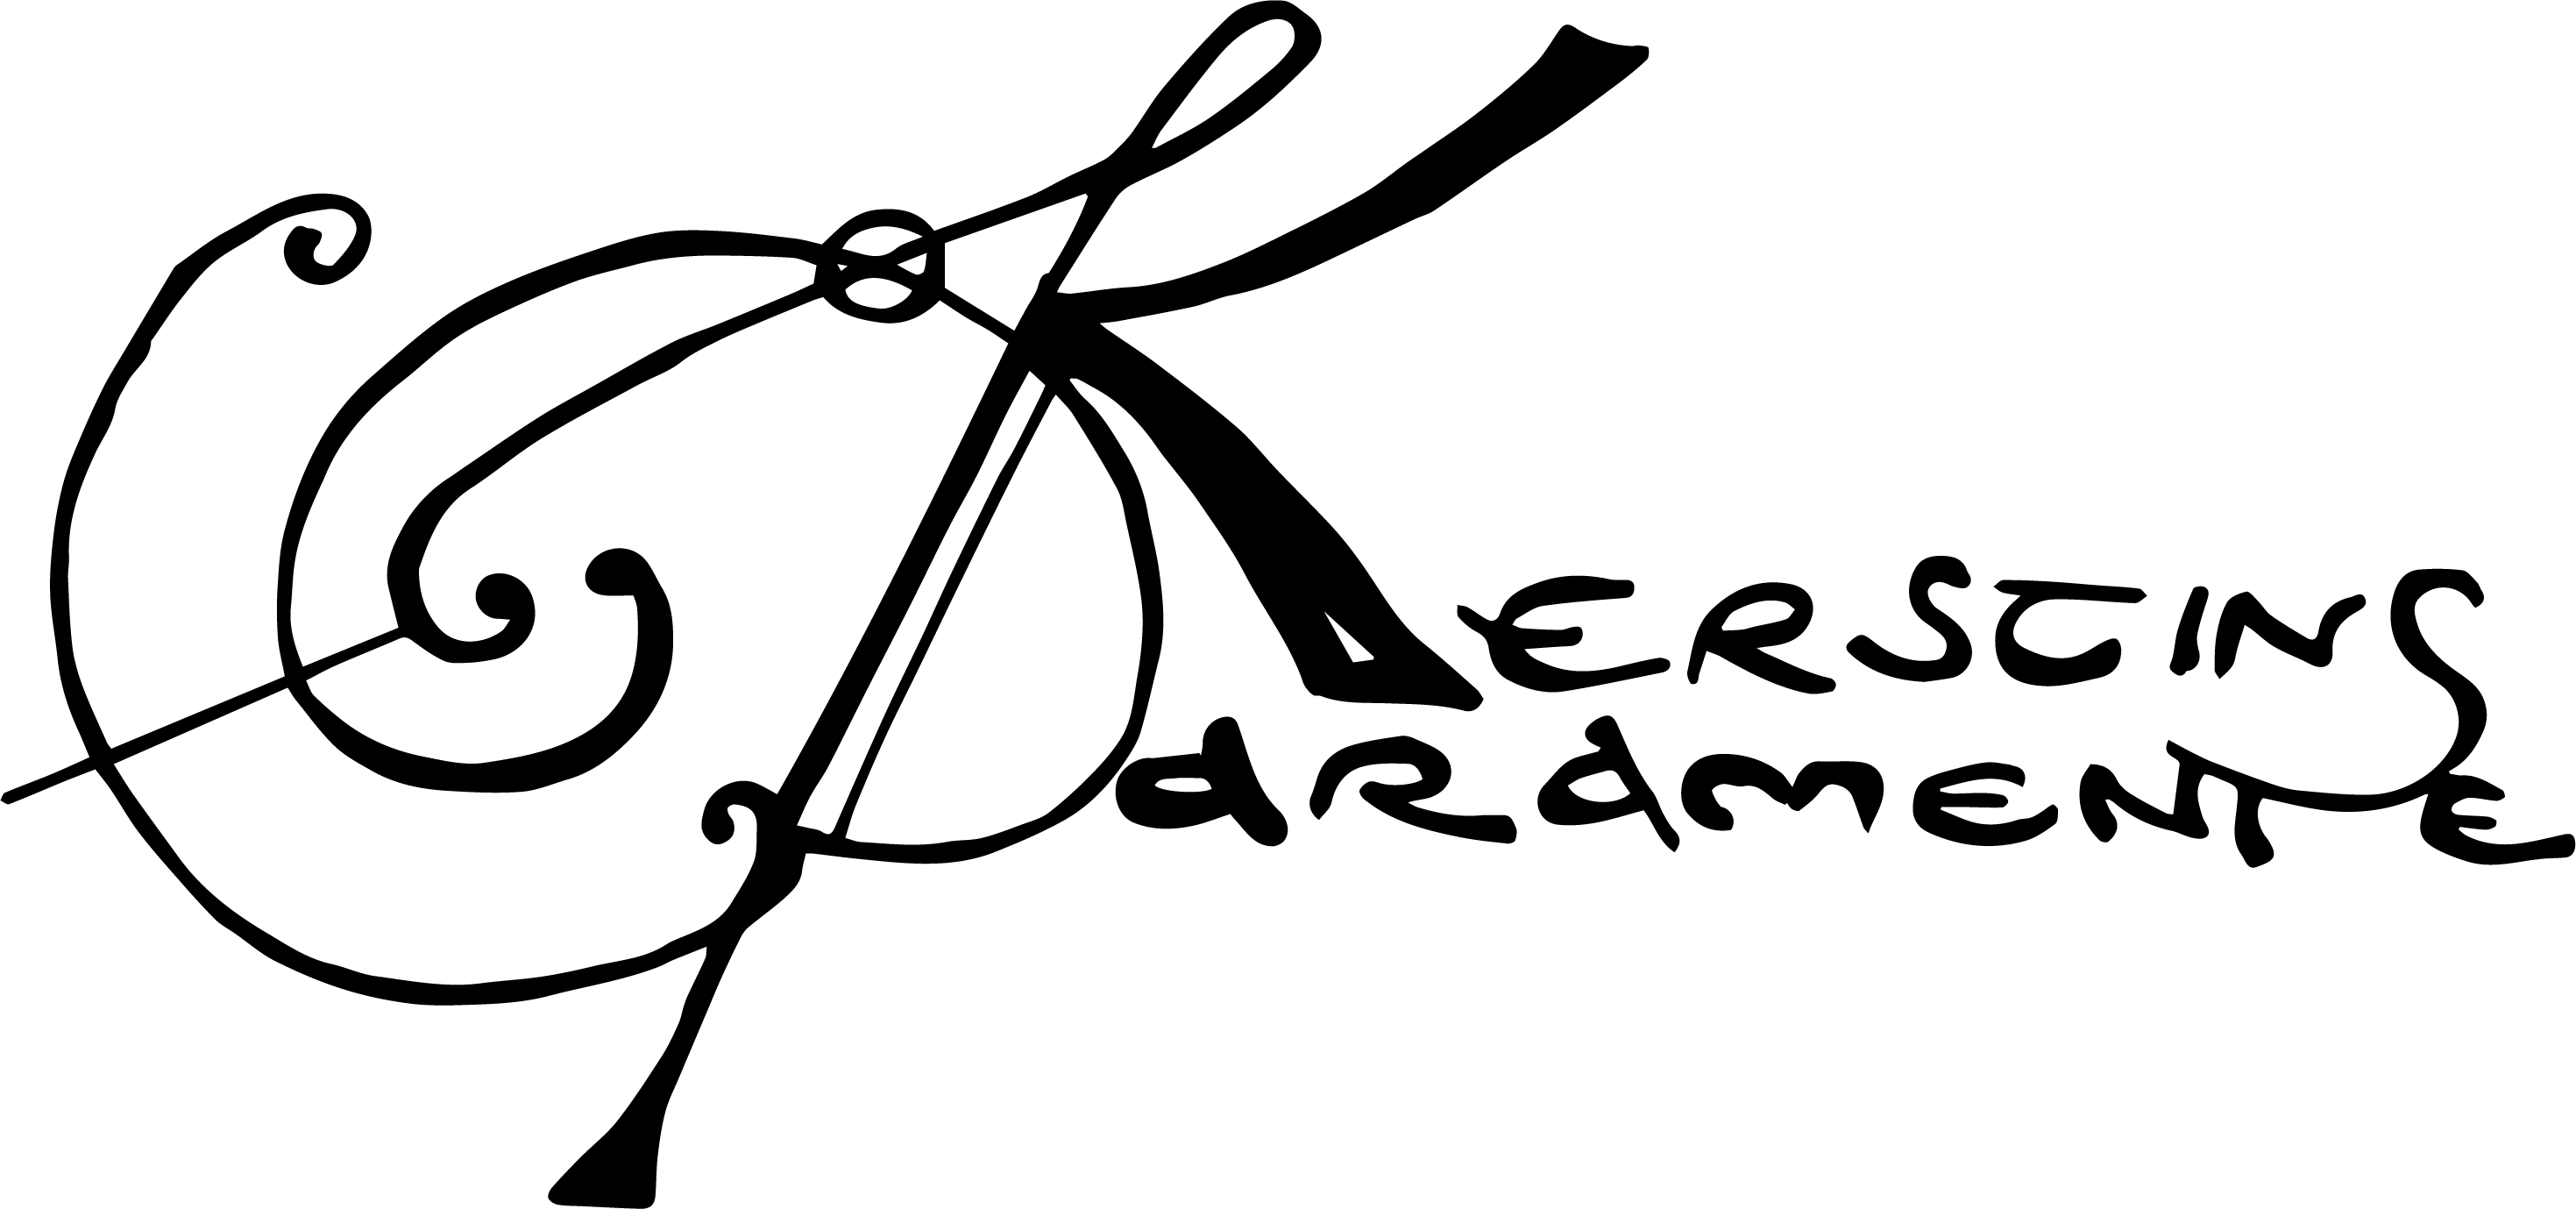 Logo Kerstins Parmente